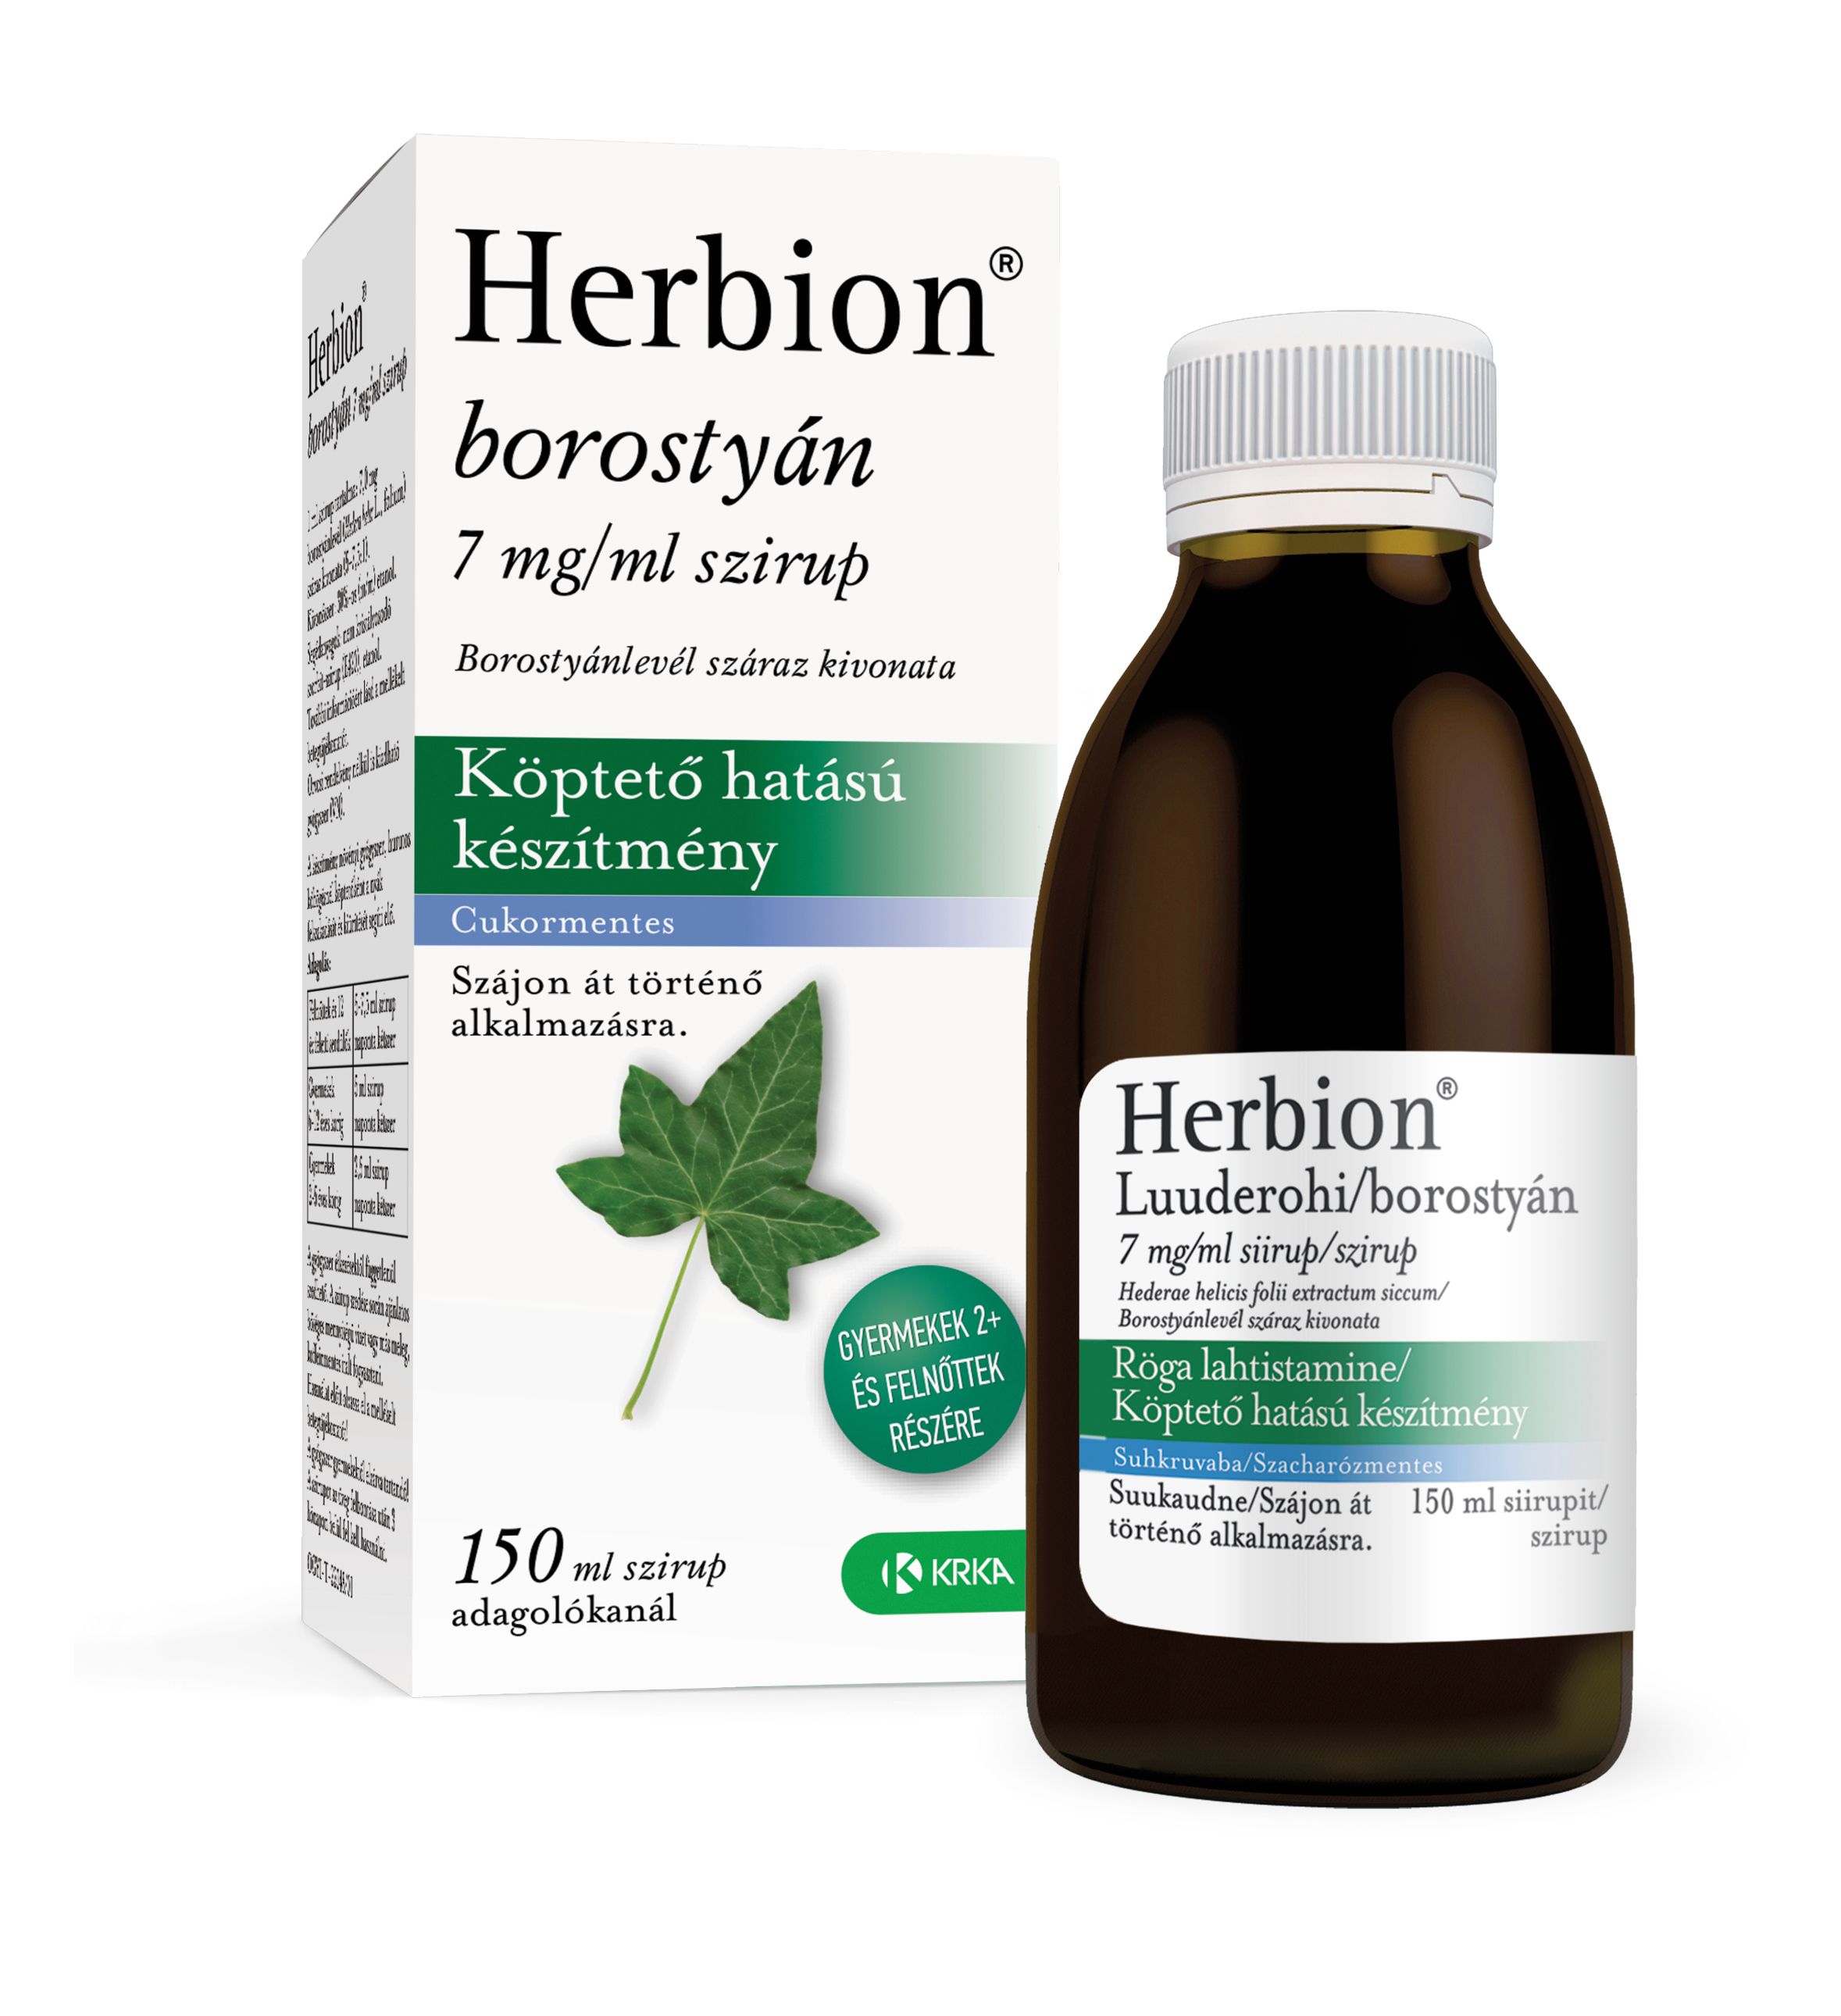 Herbion borostyán 7mg/ml szirup